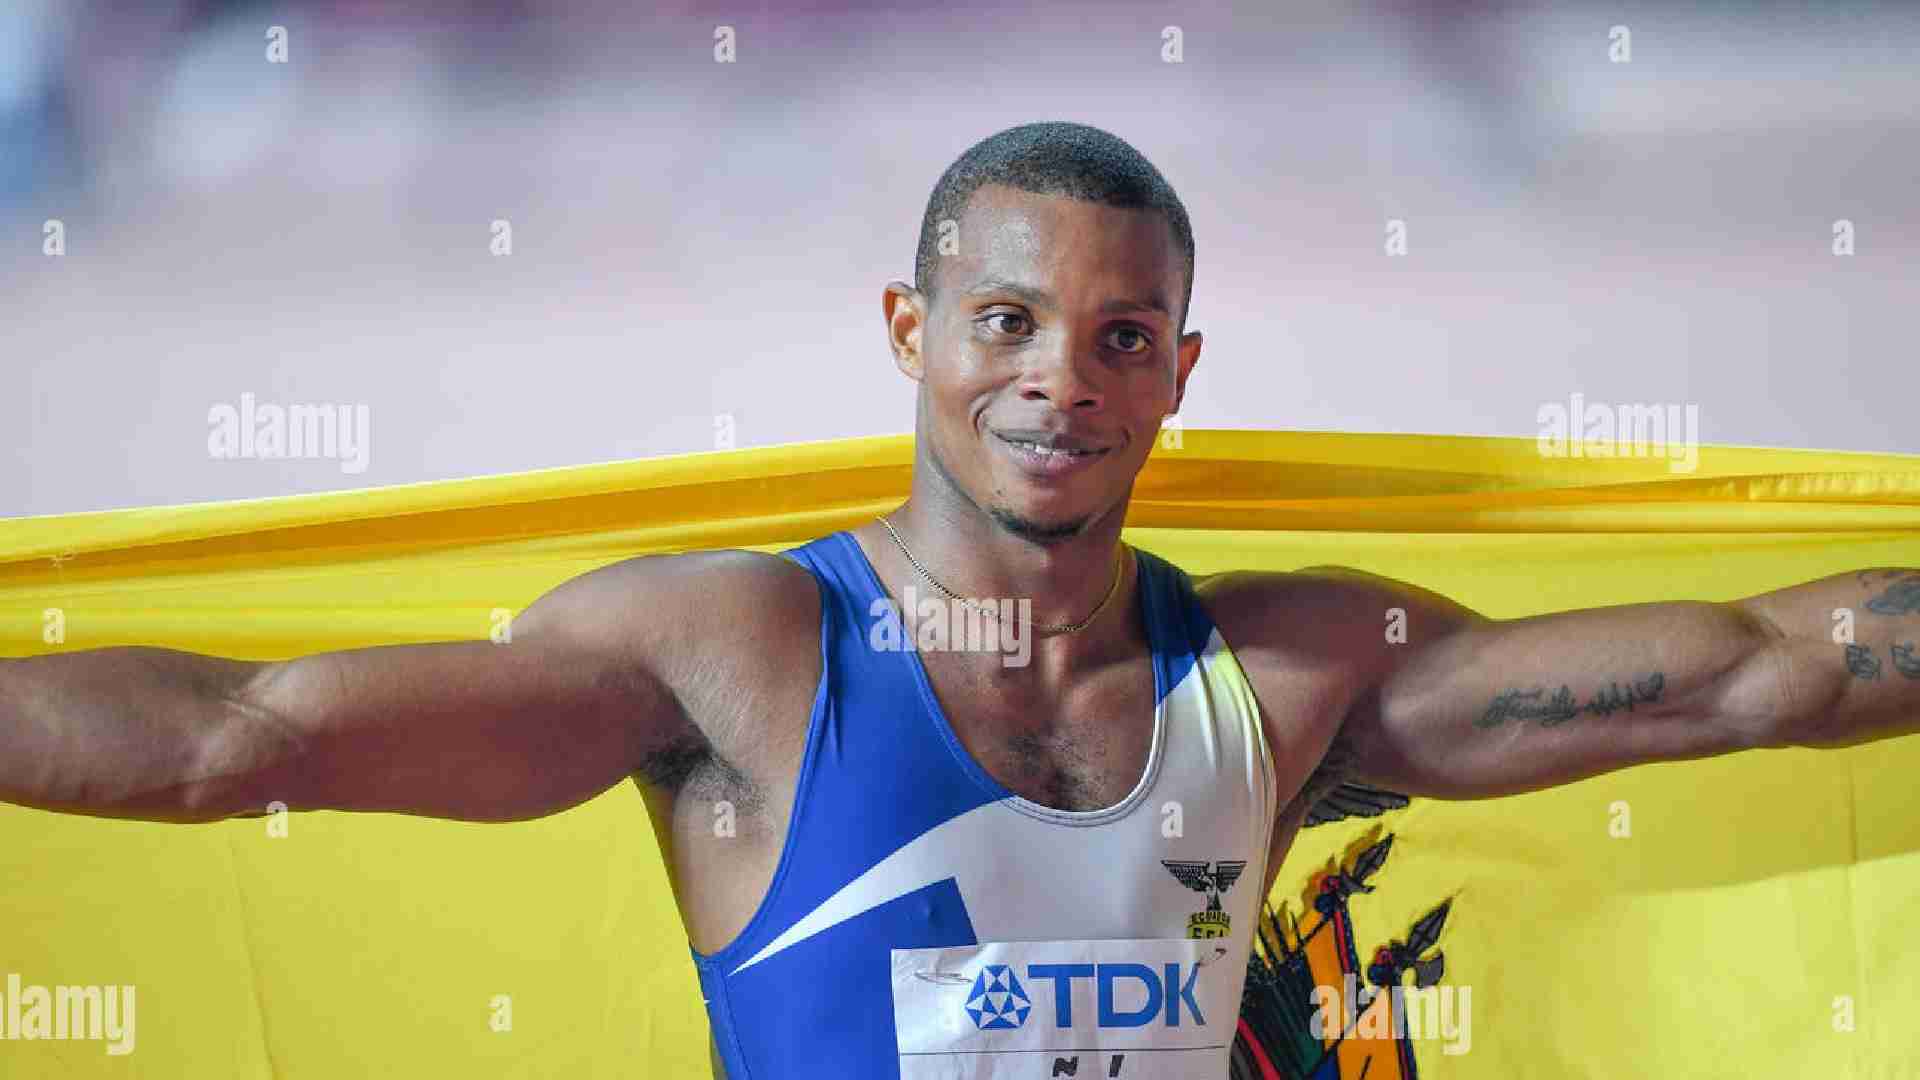 Ecuador world 200m bronze medalist Quinonez killed